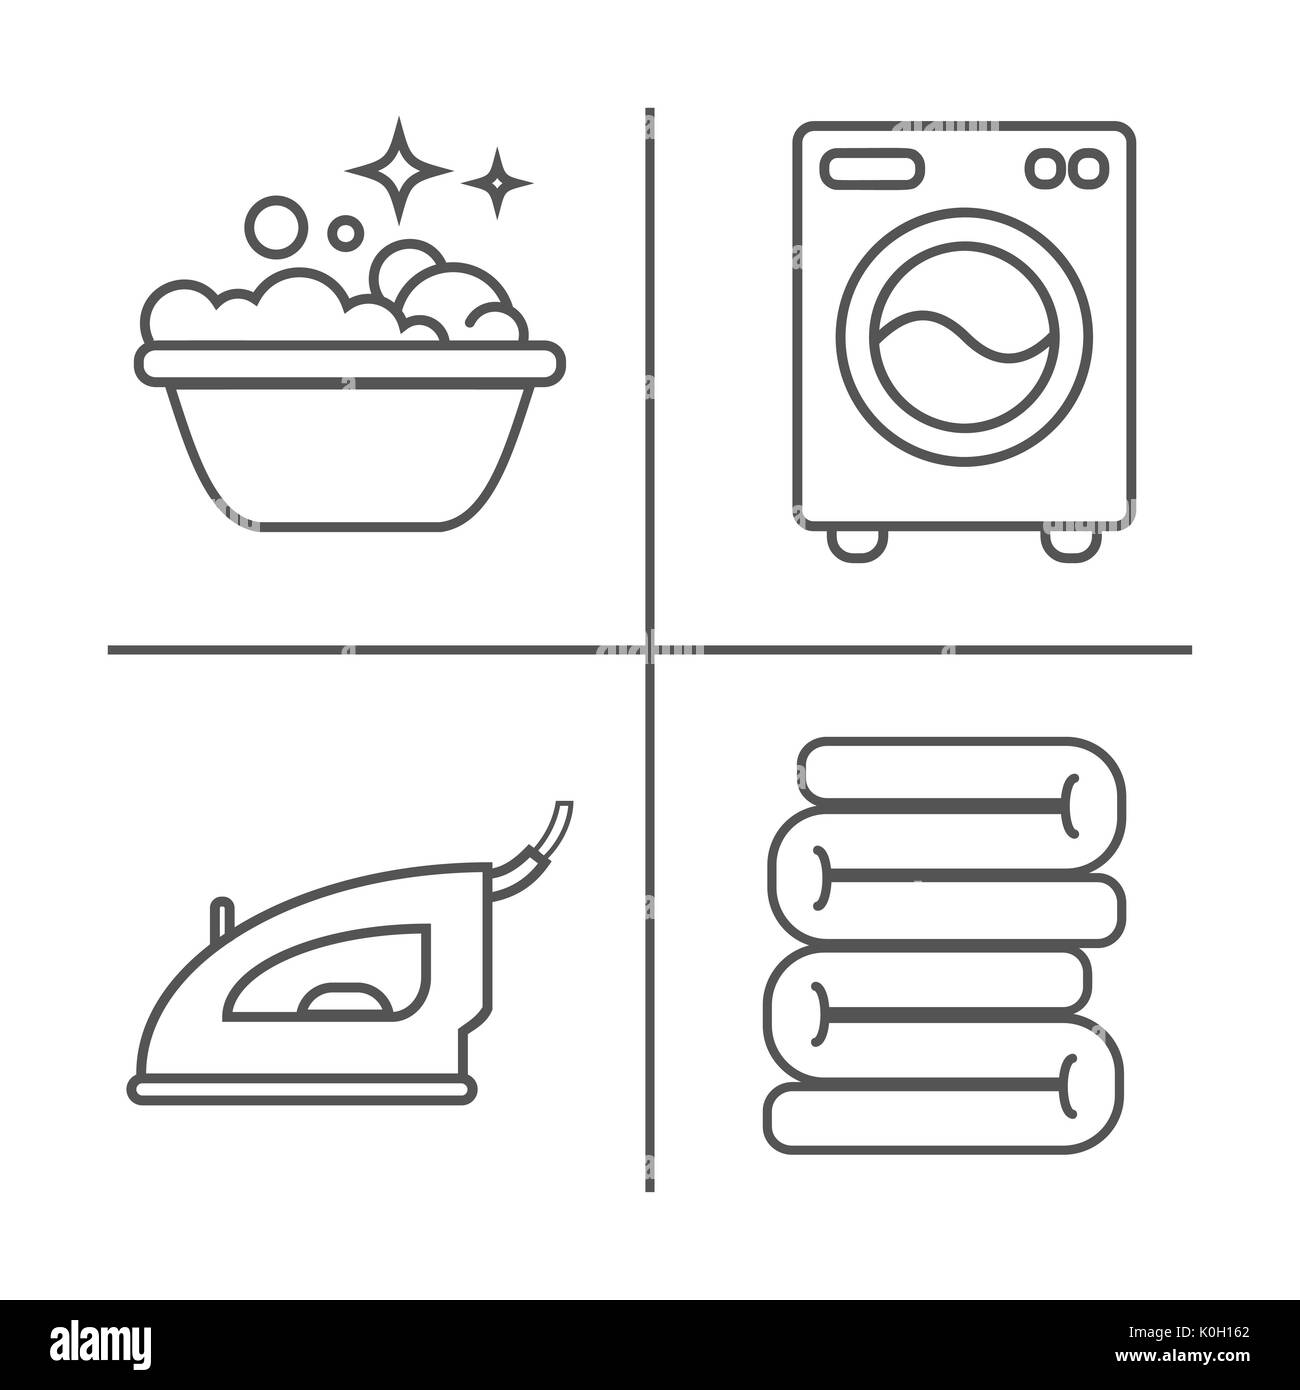 Waschen, Bügeln, saubere Wäsche Zeile für Symbole. Waschmaschine,  Bügeleisen, Handwäsche und andere clining Symbol. Um im Haus linearen  Zeichen für die Reinigung Servi Stockfotografie - Alamy